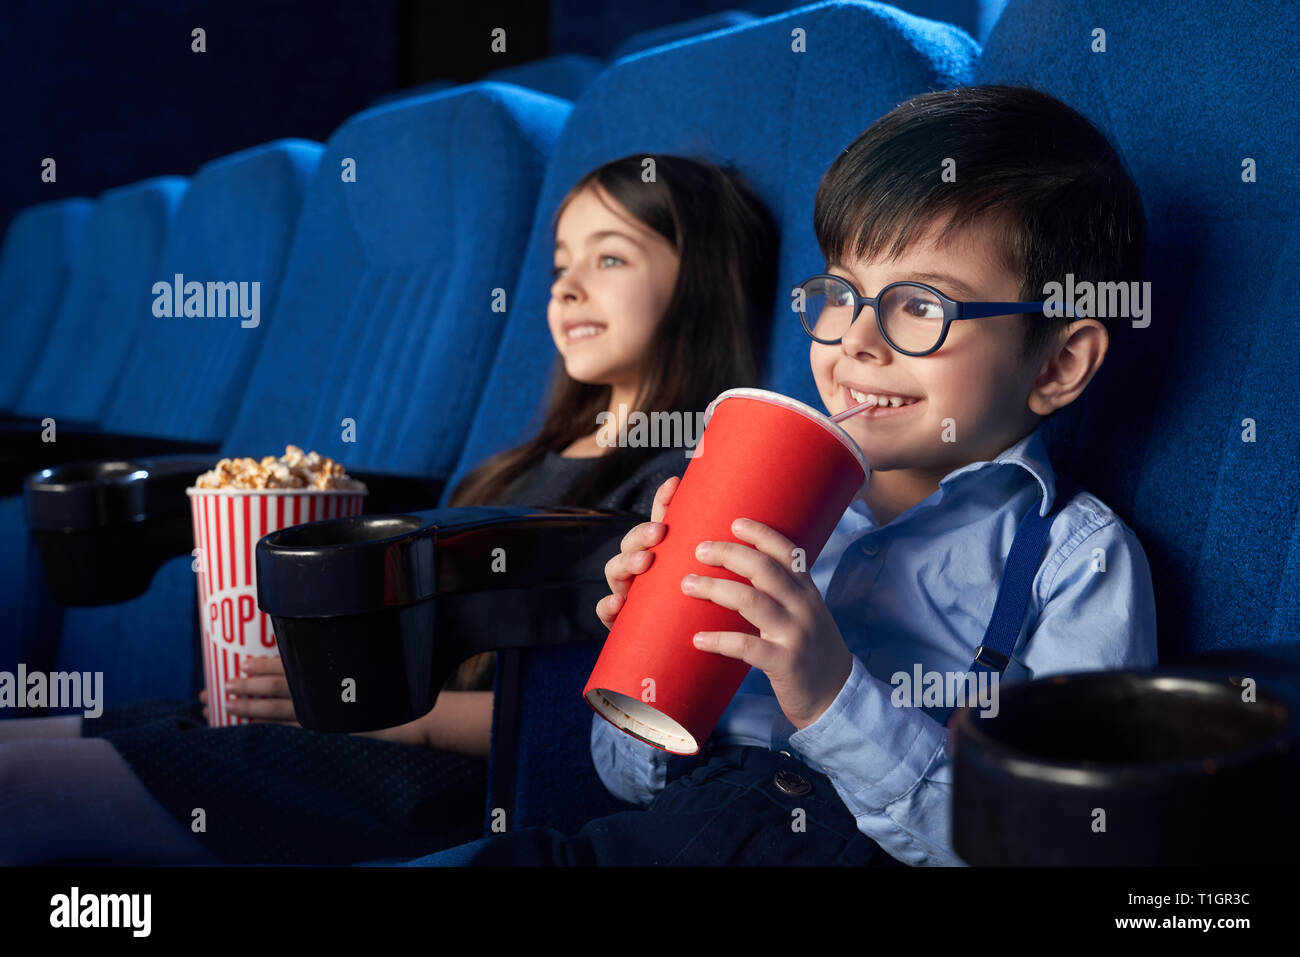 Zwei fröhliche, glückliche Kinder im Kino sitzen und beobachtete, Cartoon oder Film. Fröhlich, schöner Junge mit roten Papier Becher, Trank kohlensäurehaltige Getränke, hübsches Mädchen essen Popcorn. Stockfoto